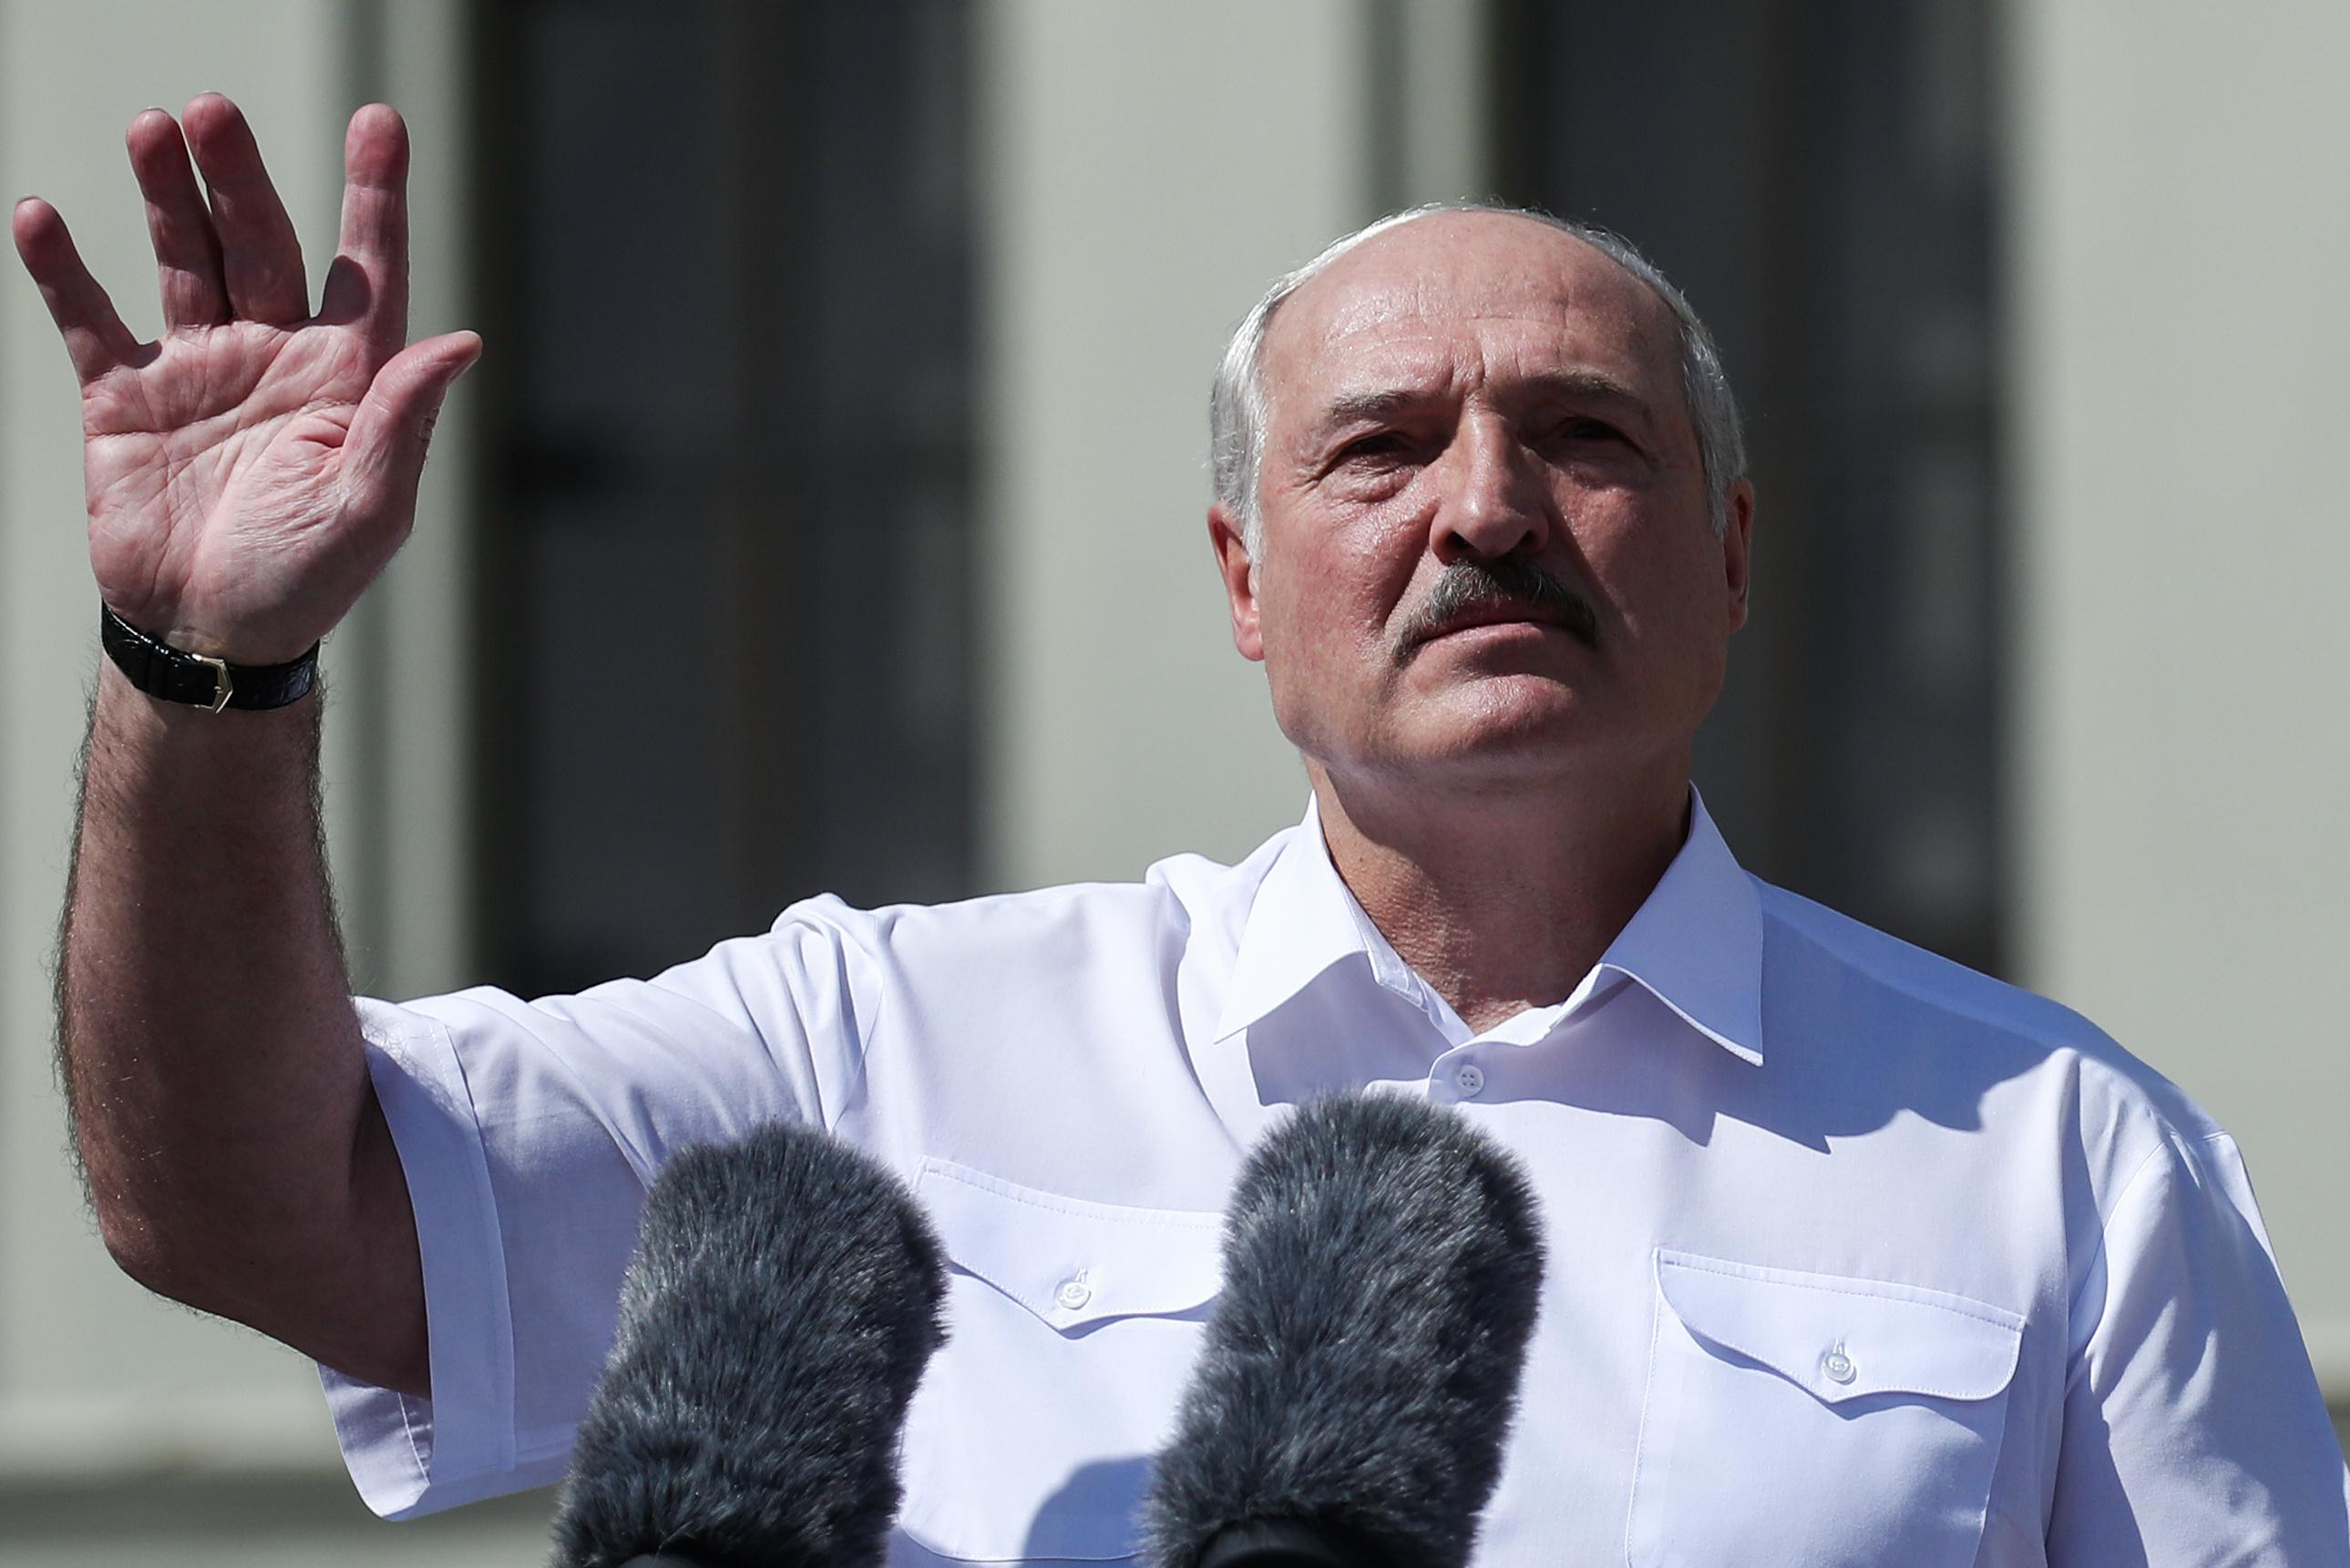 "Нацизм поднял голову": Лукашенко отметился новыми позорными и циничными заявлениями